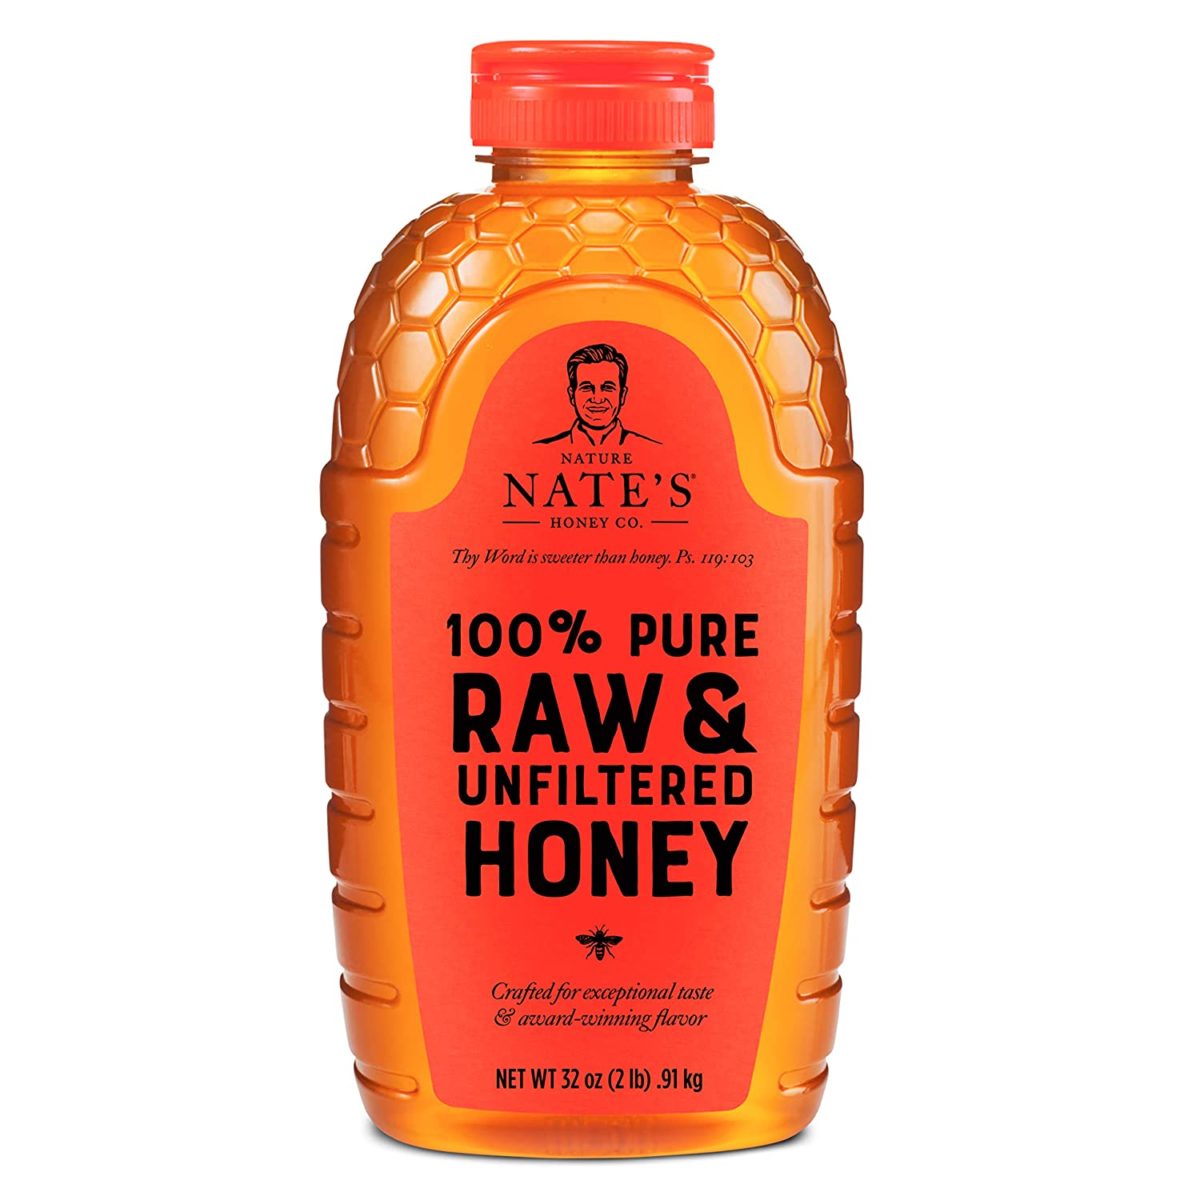 Honung är ett bra substitut för rissirap